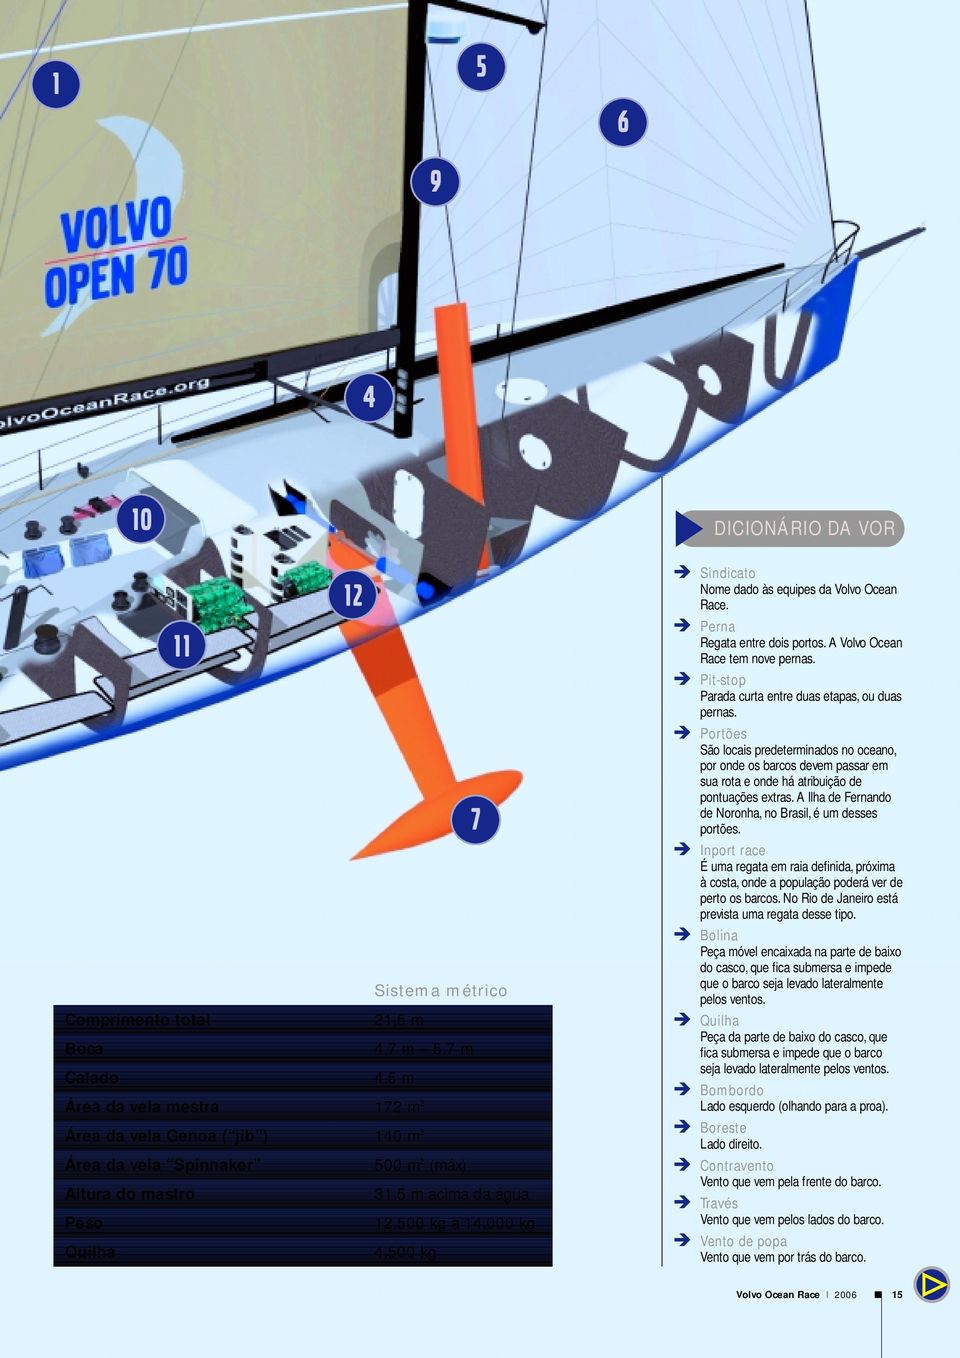 500 kg DICIONÁRIO DA VOR Sindicato Nome dado às equipes da Volvo Ocean Race. Perna Regata entre dois portos. A Volvo Ocean Race tem nove pernas.